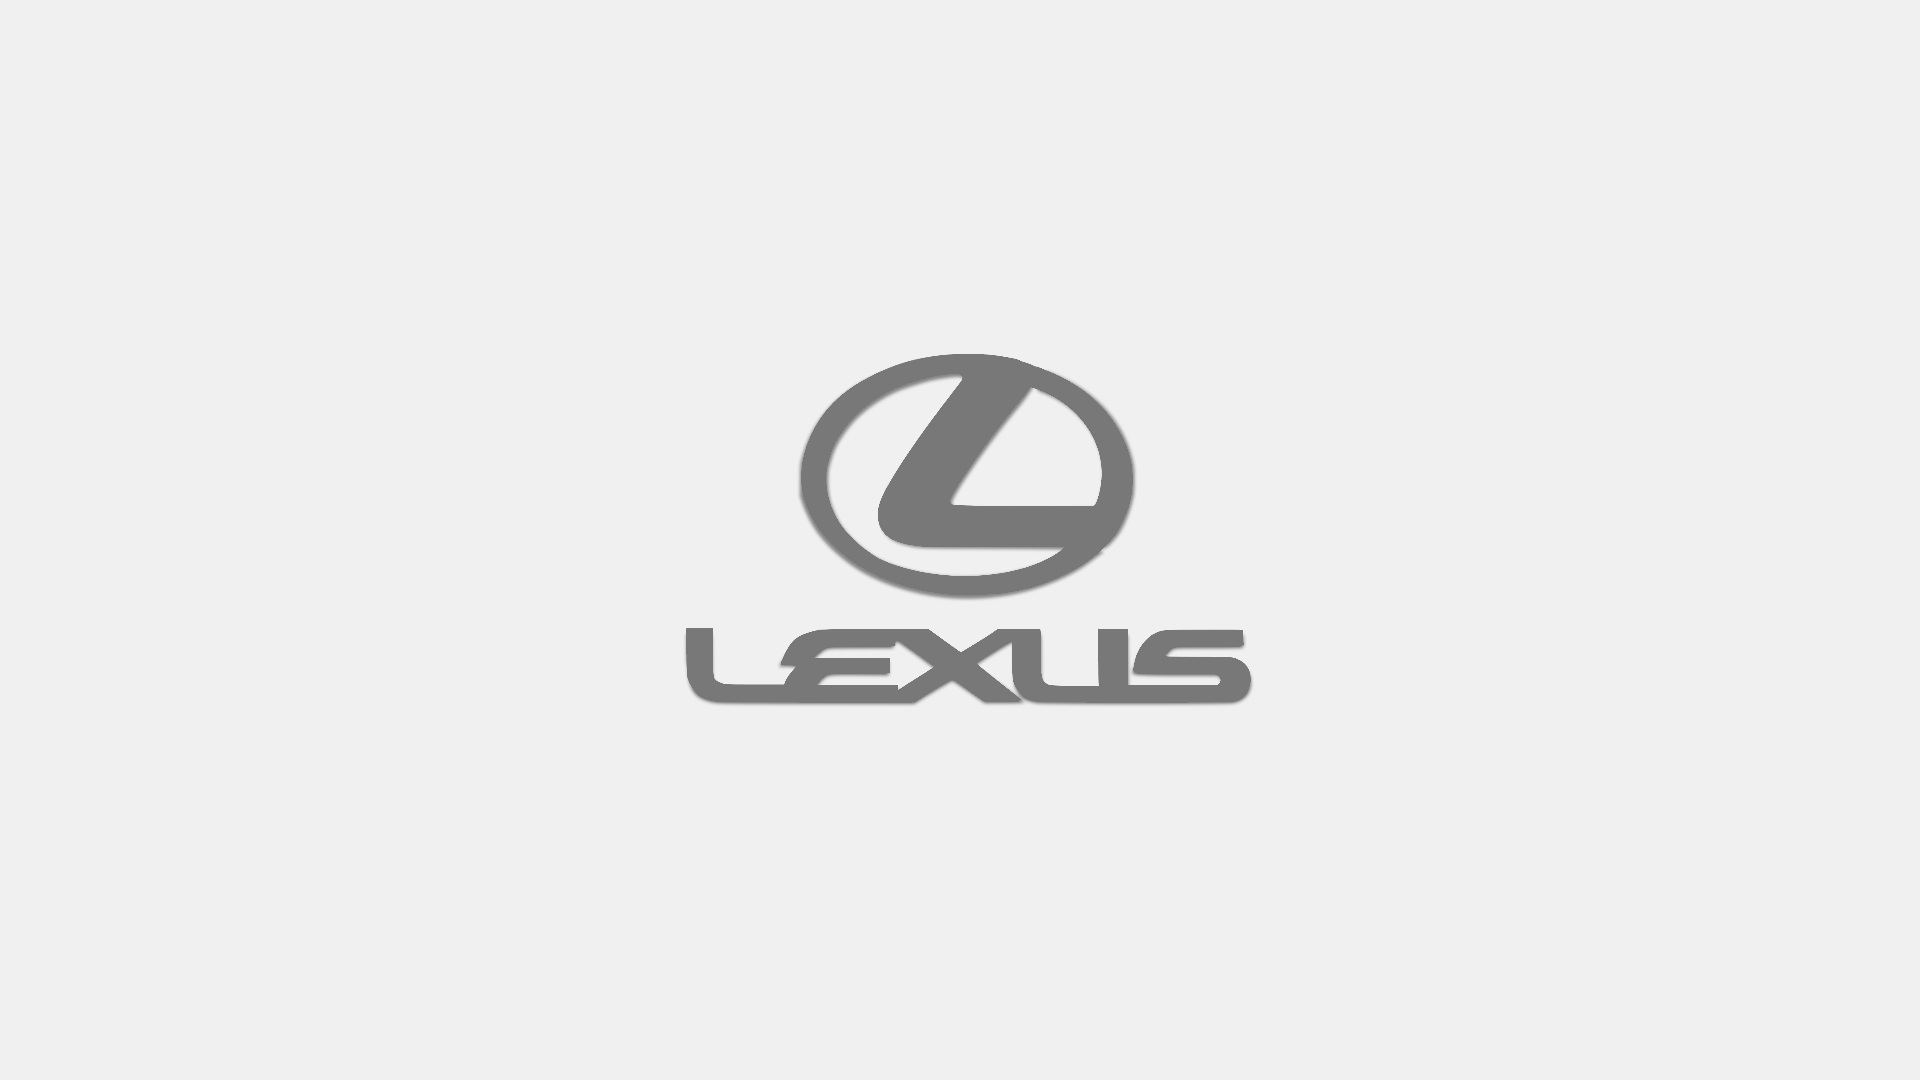 fond d'écran lexus logo,texte,police de caractère,graphique,ouvrages d'art,cercle